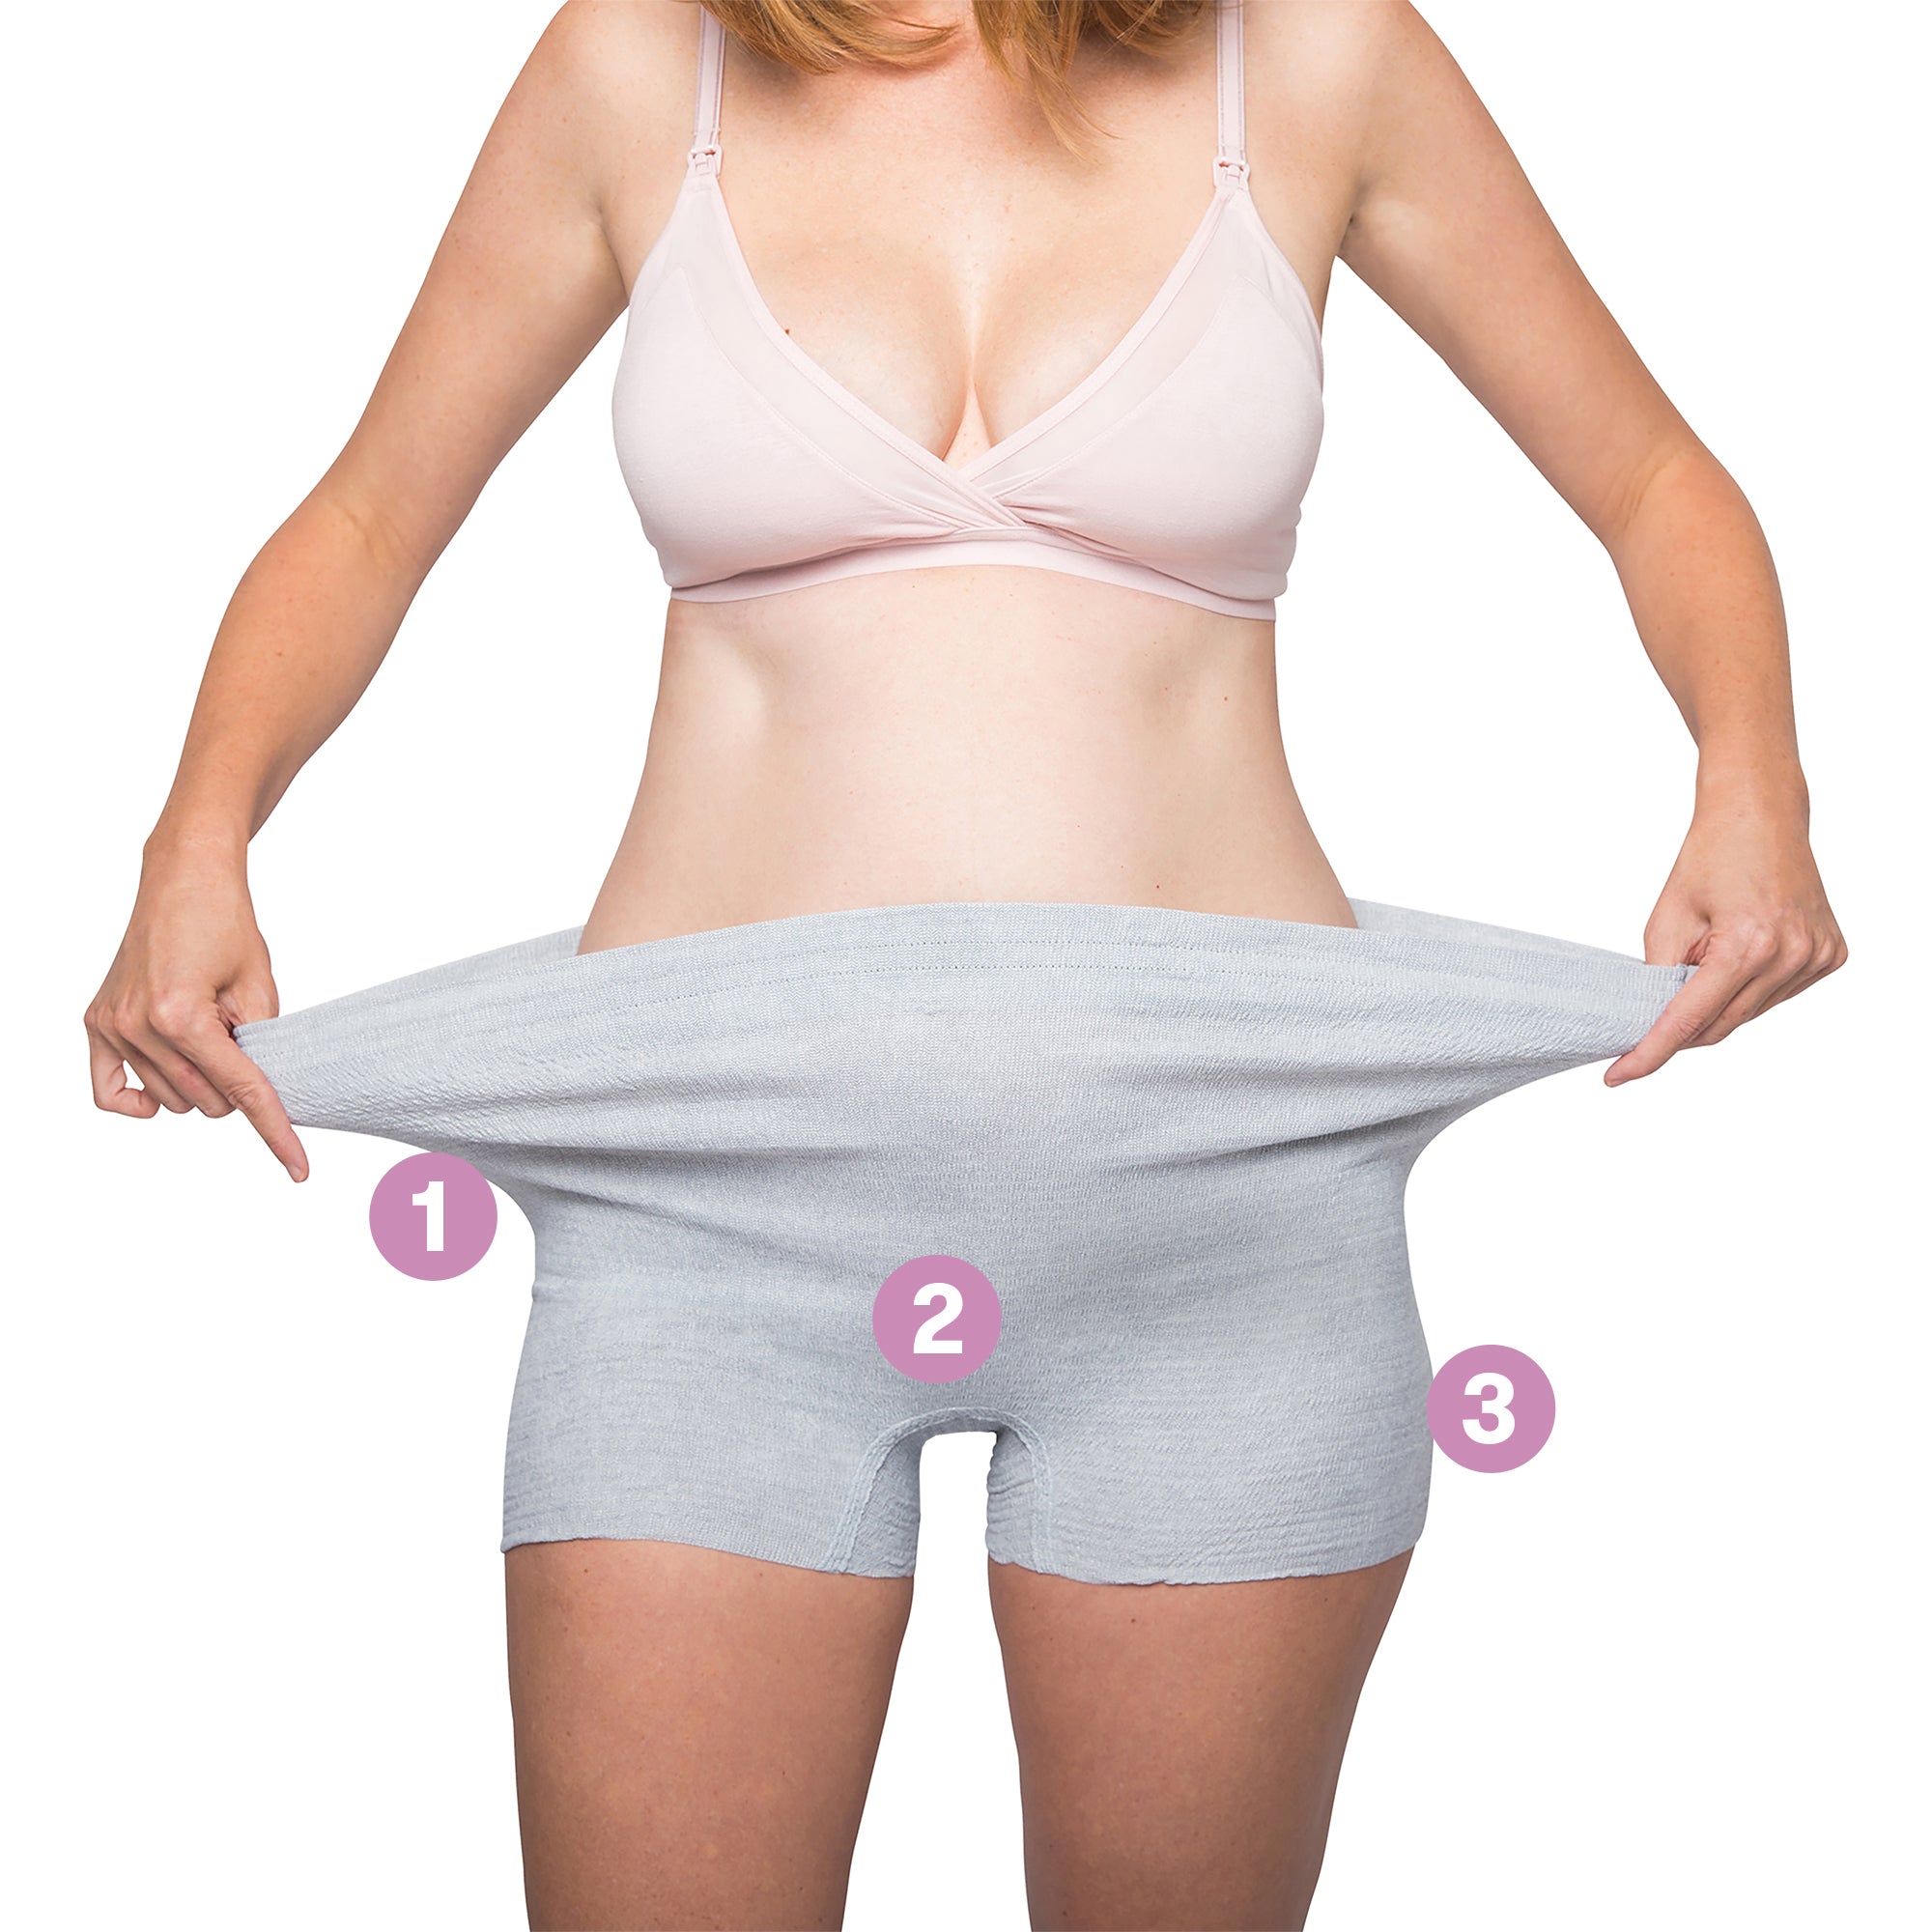 Frida Mom High-Waist Disposable C-Section Postpartum Underwear